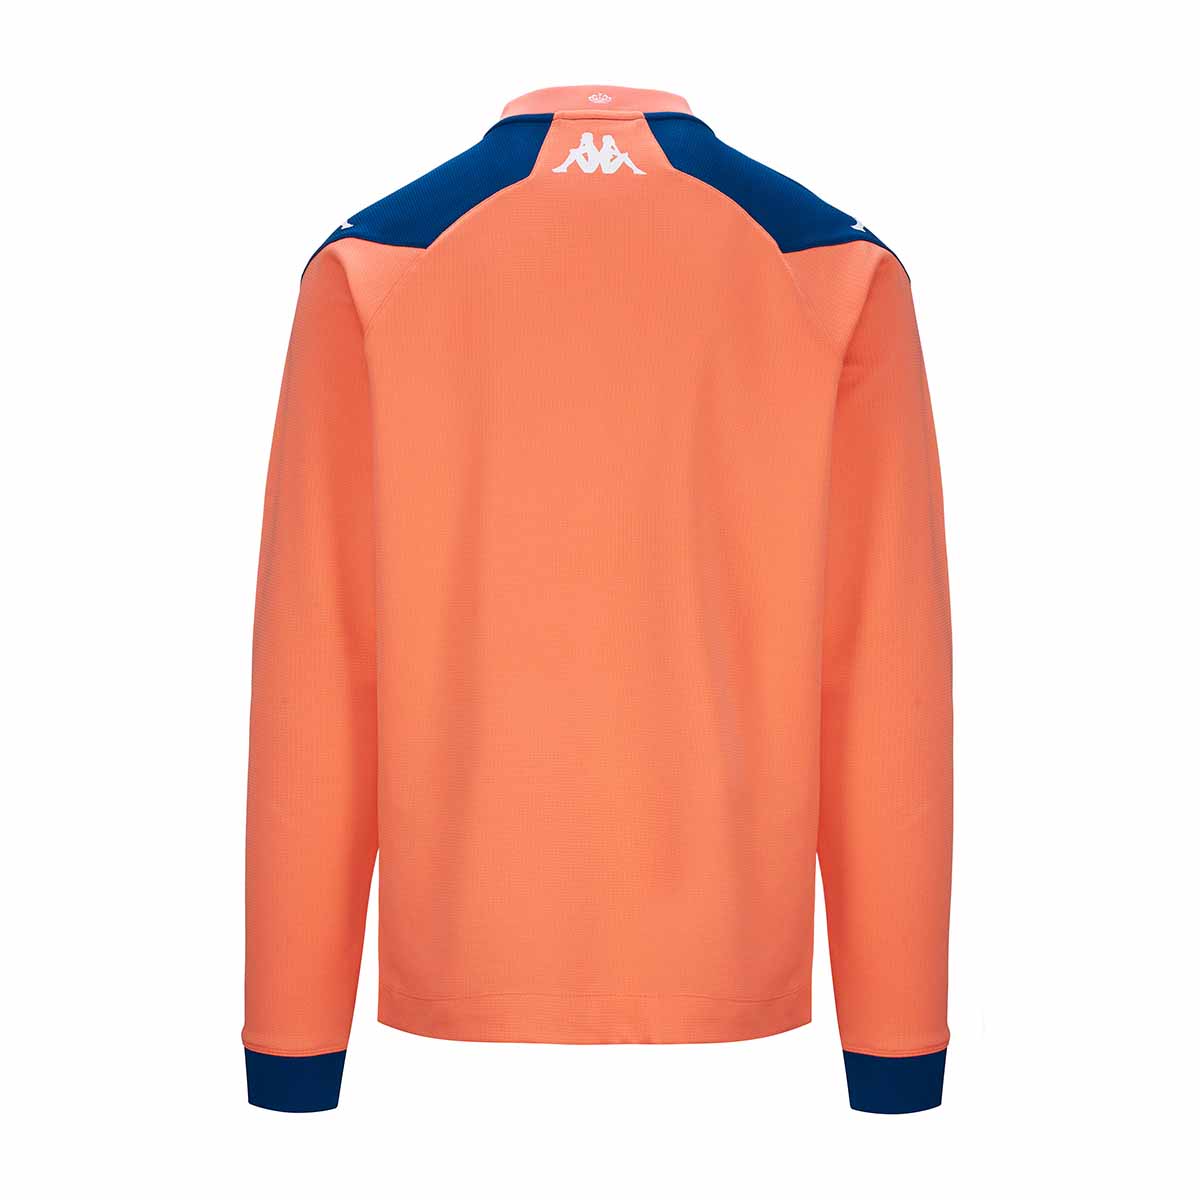 Sweatshirt Ablas Pro 7 AS Monaco 23/24 Orange Homme